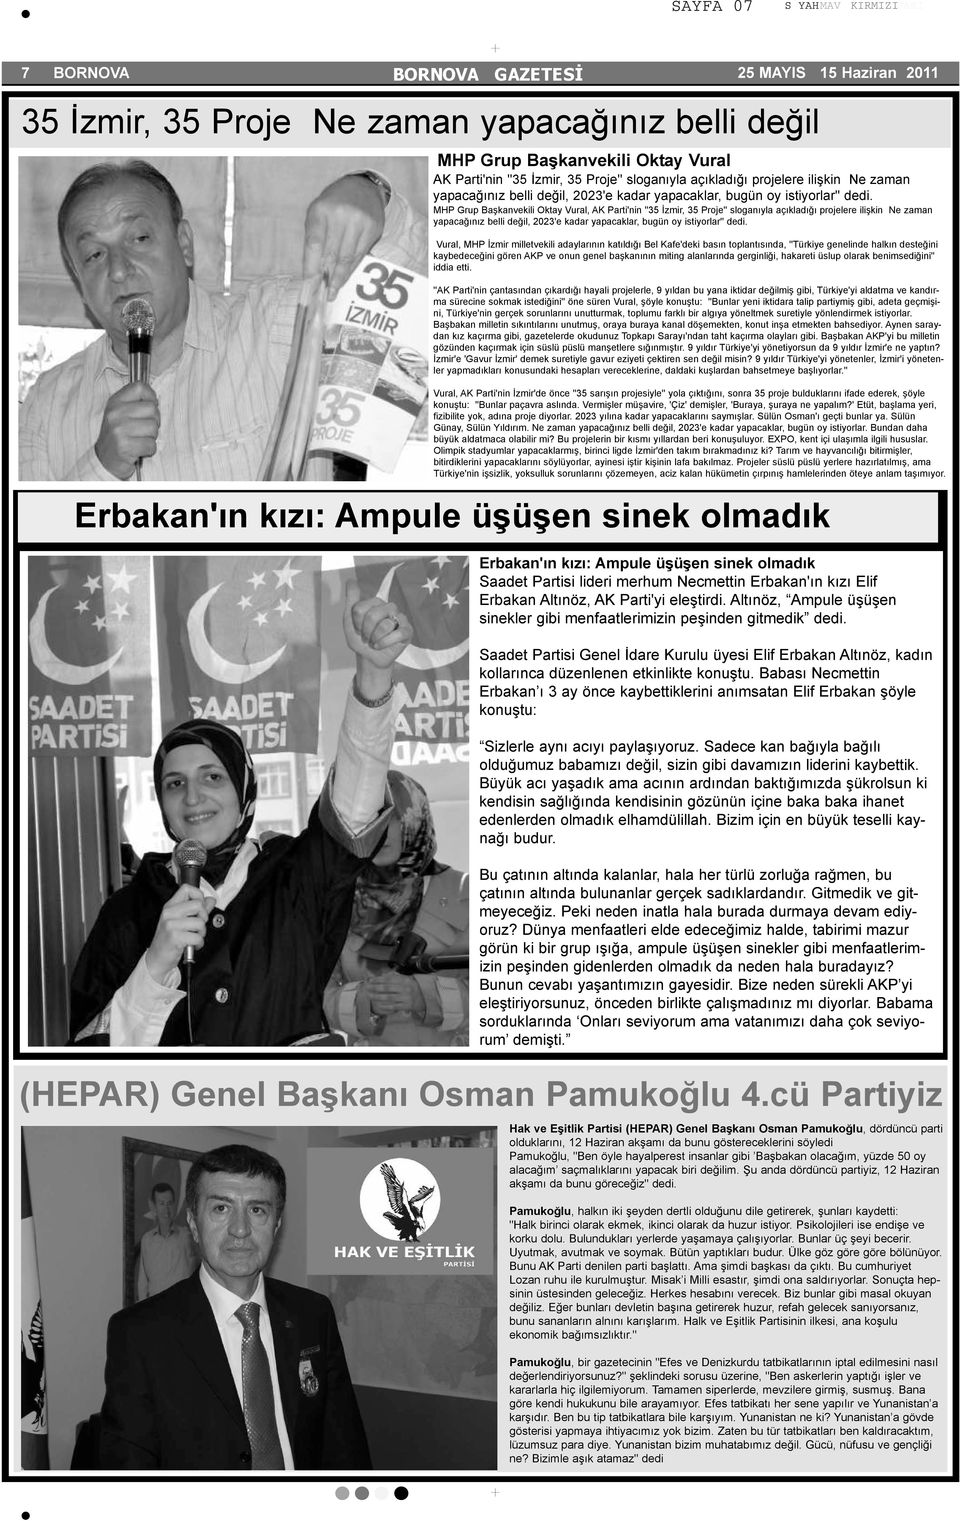 MHP Grup Başkanvekili Oktay Vural, AK Parti'nin ''35 İzmir, 35 Proje'' sloganıyla açıkladığı projelere ilişkin  Vural, MHP İzmir milletvekili adaylarının katıldığı Bel Kafe'deki basın toplantısında,